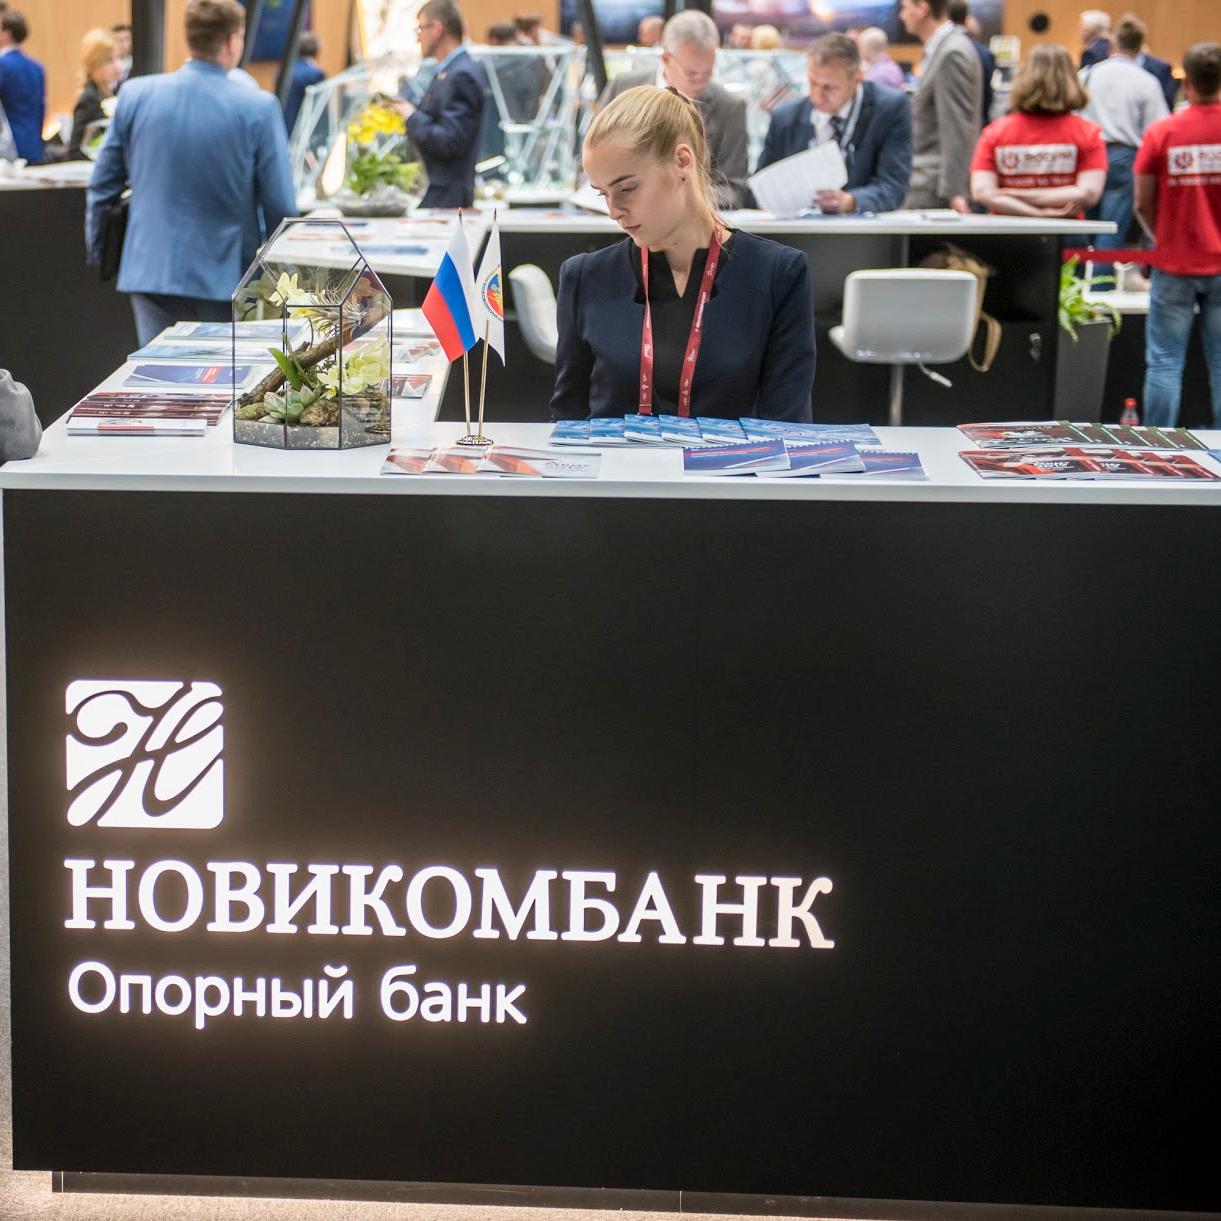 В первом полугодии Новикомбанк выдал 93,6 млрд рублей предприятиям Ростеха